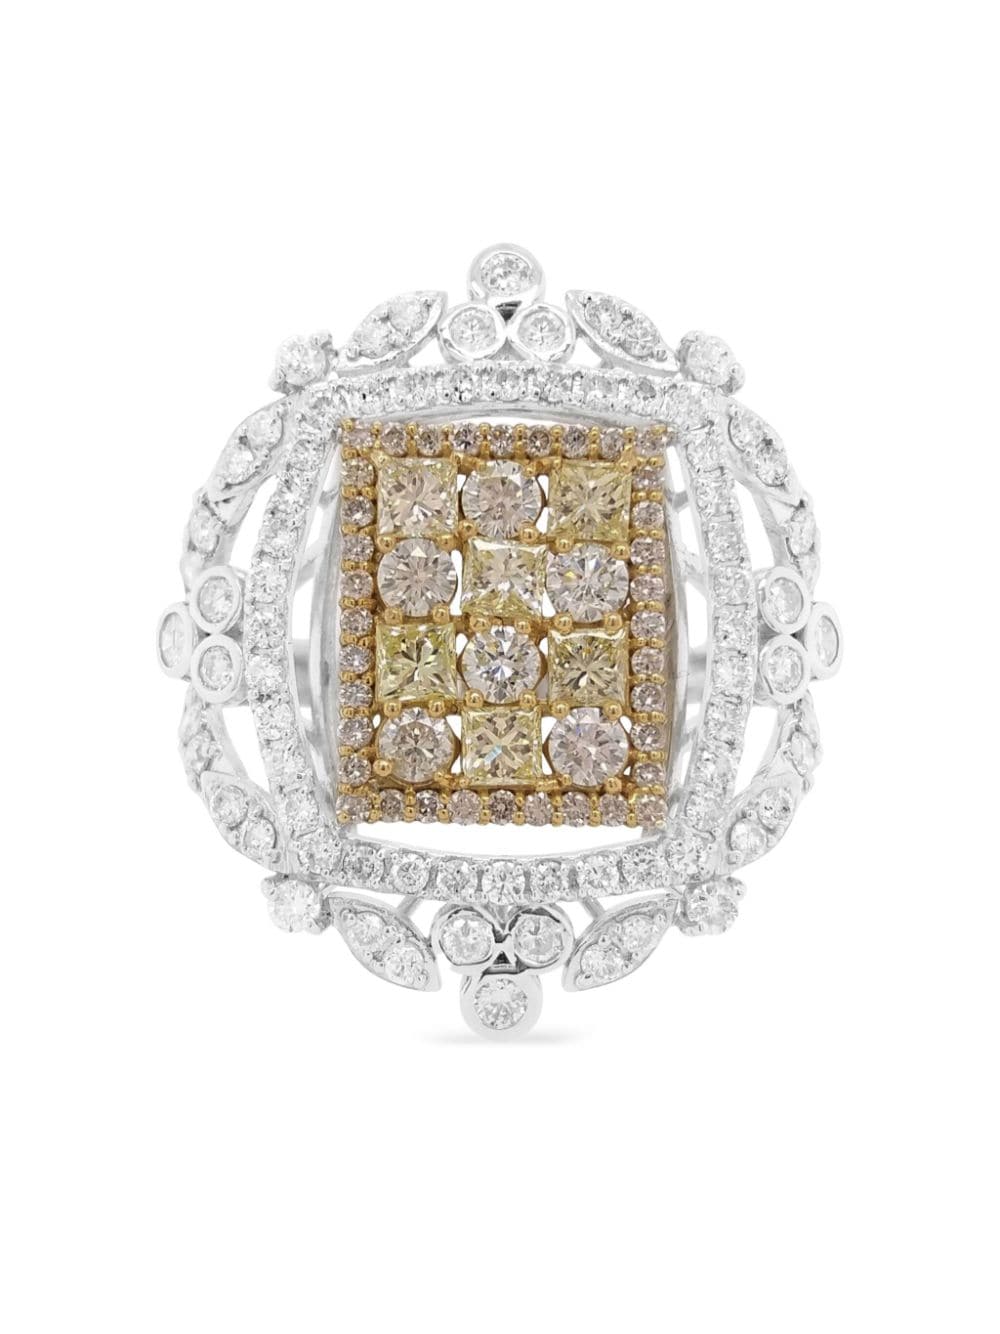 18kt white gold diamond cocktail ring